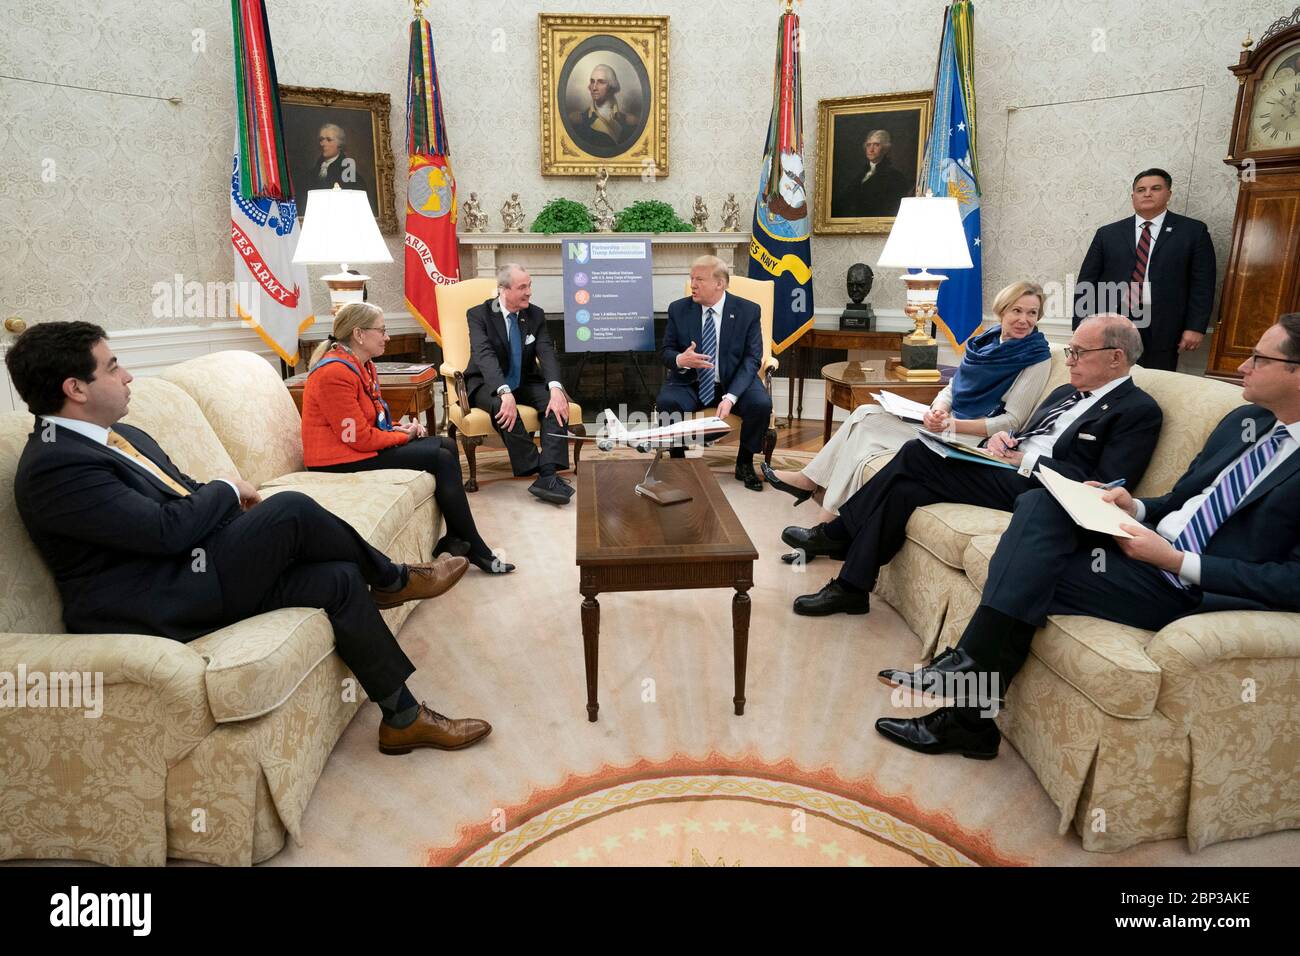 Le président américain Donald Trump rencontre le New Jersey Gov. Phil Murphy discutera de la pandémie de coronavirus COVID-19 dans le Bureau ovale de la Maison Blanche le 30 avril 2020 à Washington, D.C. Banque D'Images